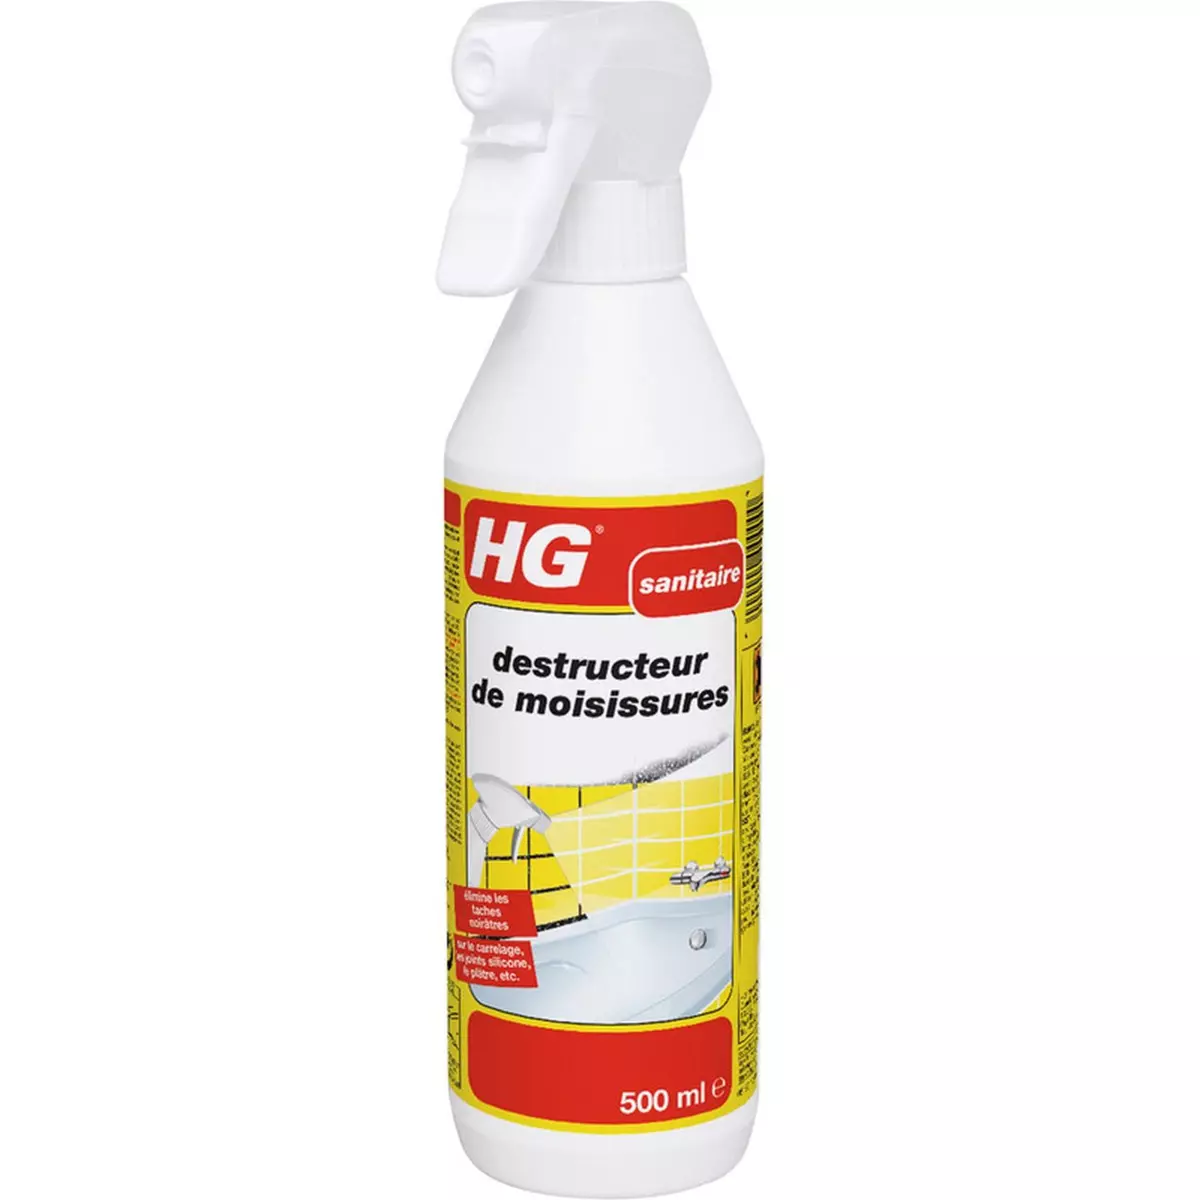 HG HG destructeur de moisissures 0,5l